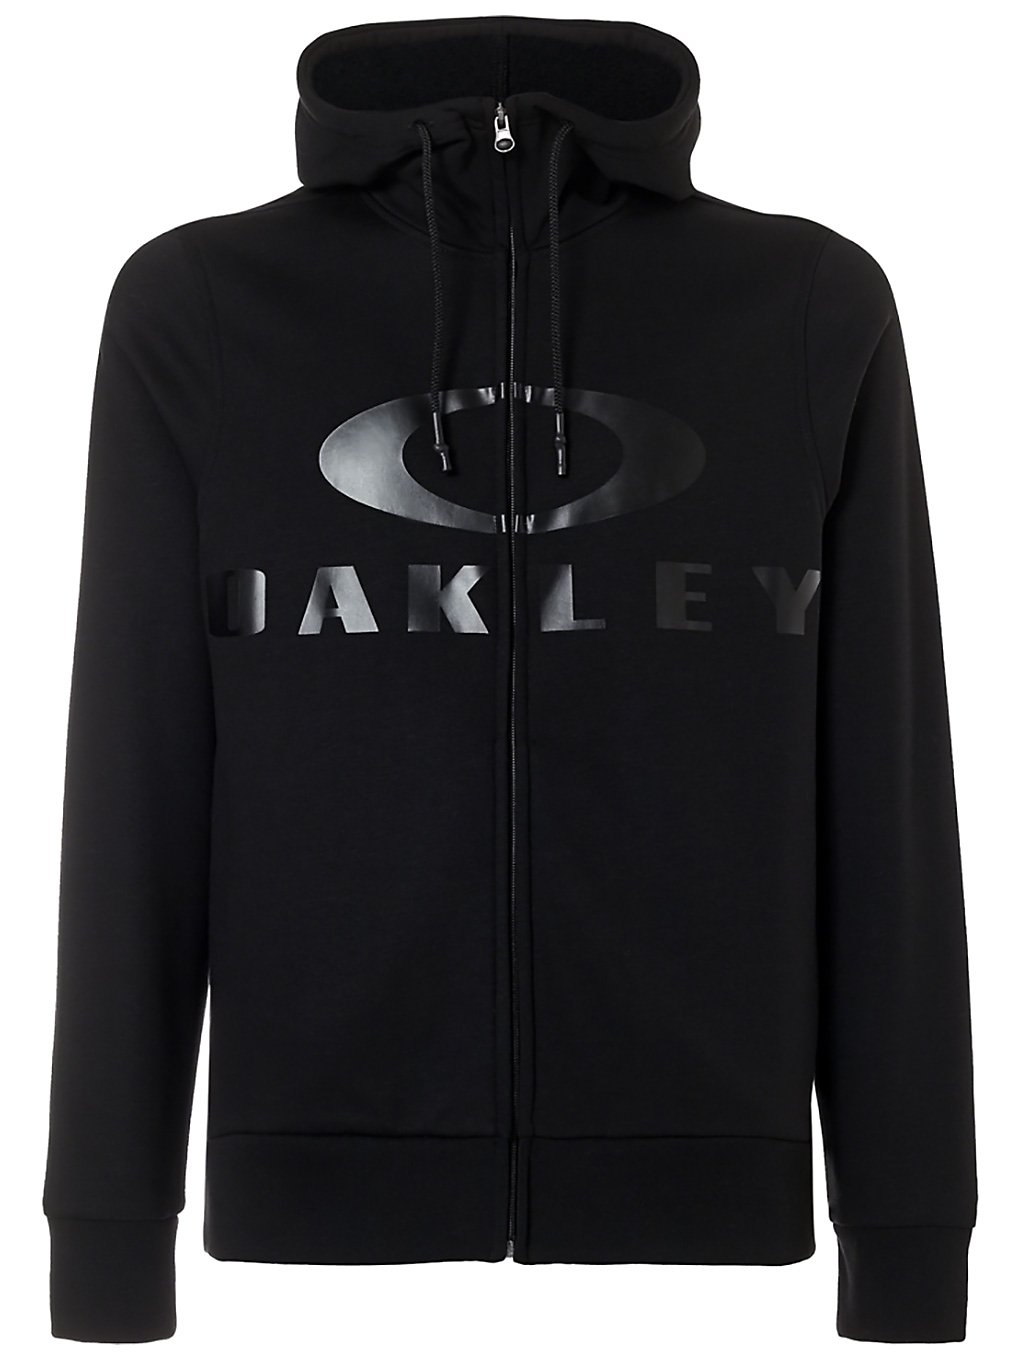 Oakley bark zip hoodie musta, oakley